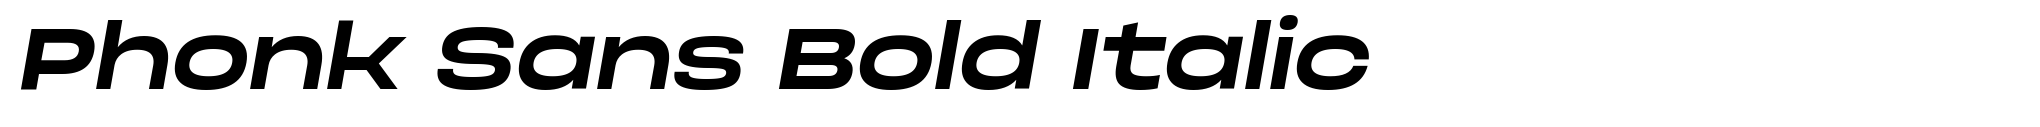 Phonk Sans Bold Italic image